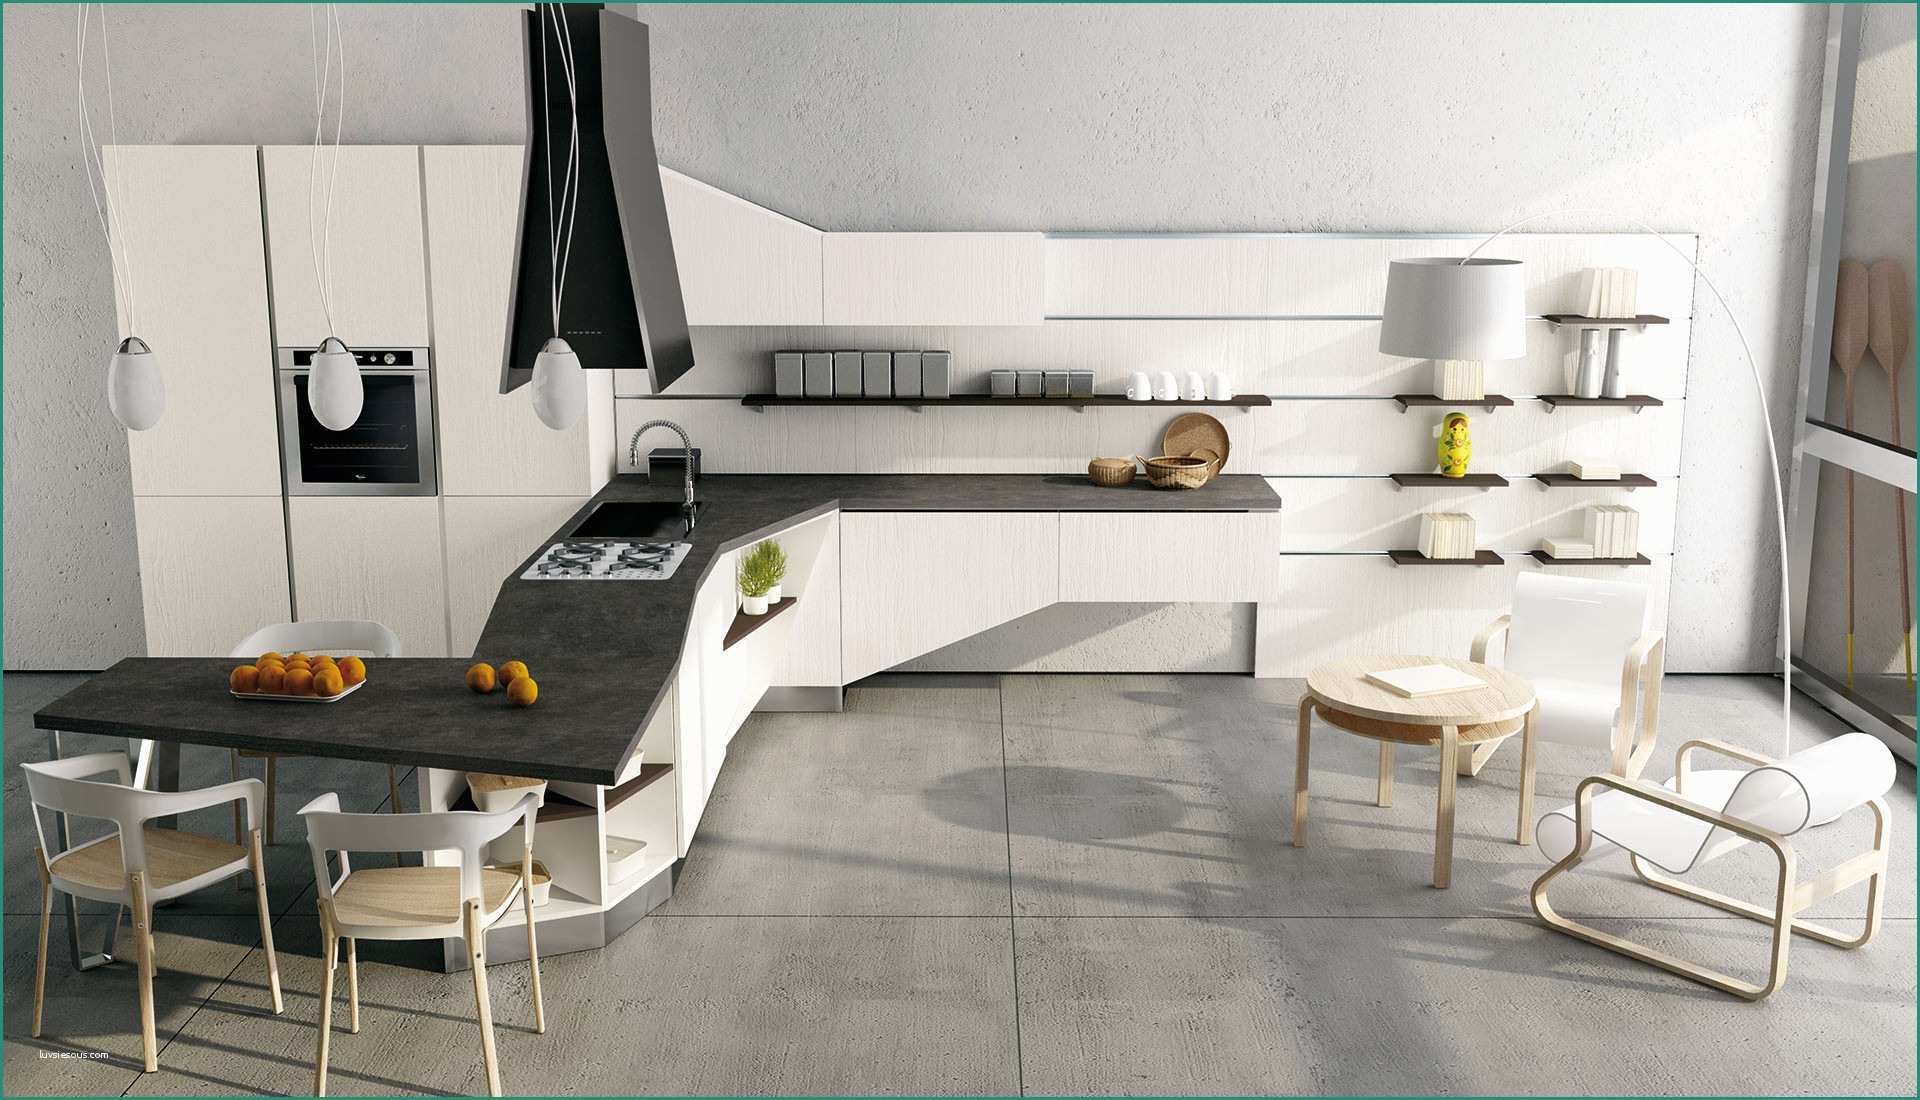 Cucina Moderna Bianca E Colori Per Cucina Moderna Cucina Moderna Colore Bianco Parashizzi